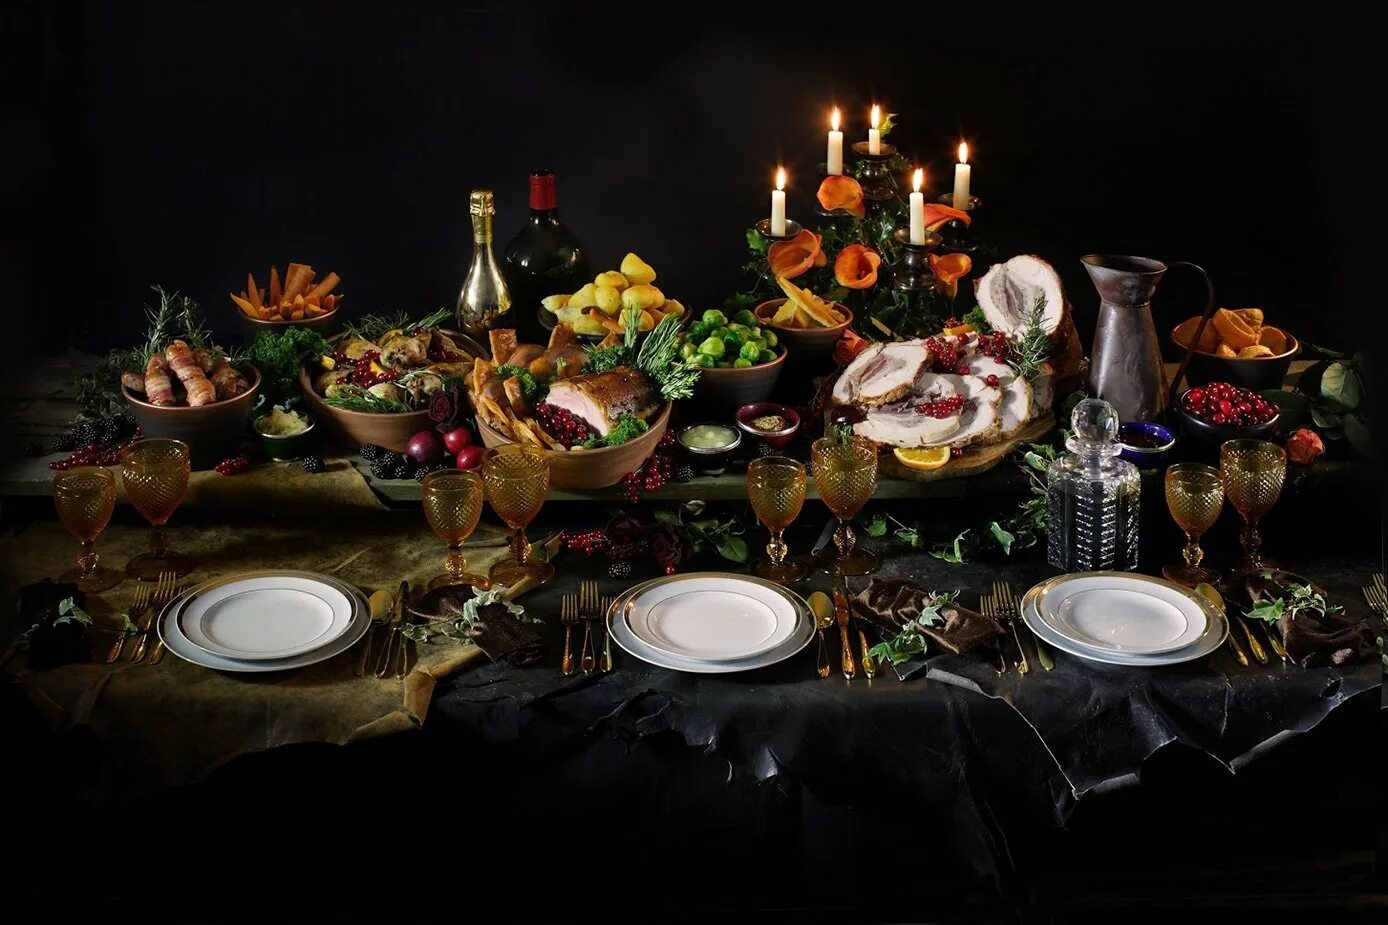 Гостей ждал накрытый стол. Накрытый стол. Красивый стол с едой. Шикарный праздничный стол. Праздничное застолье.